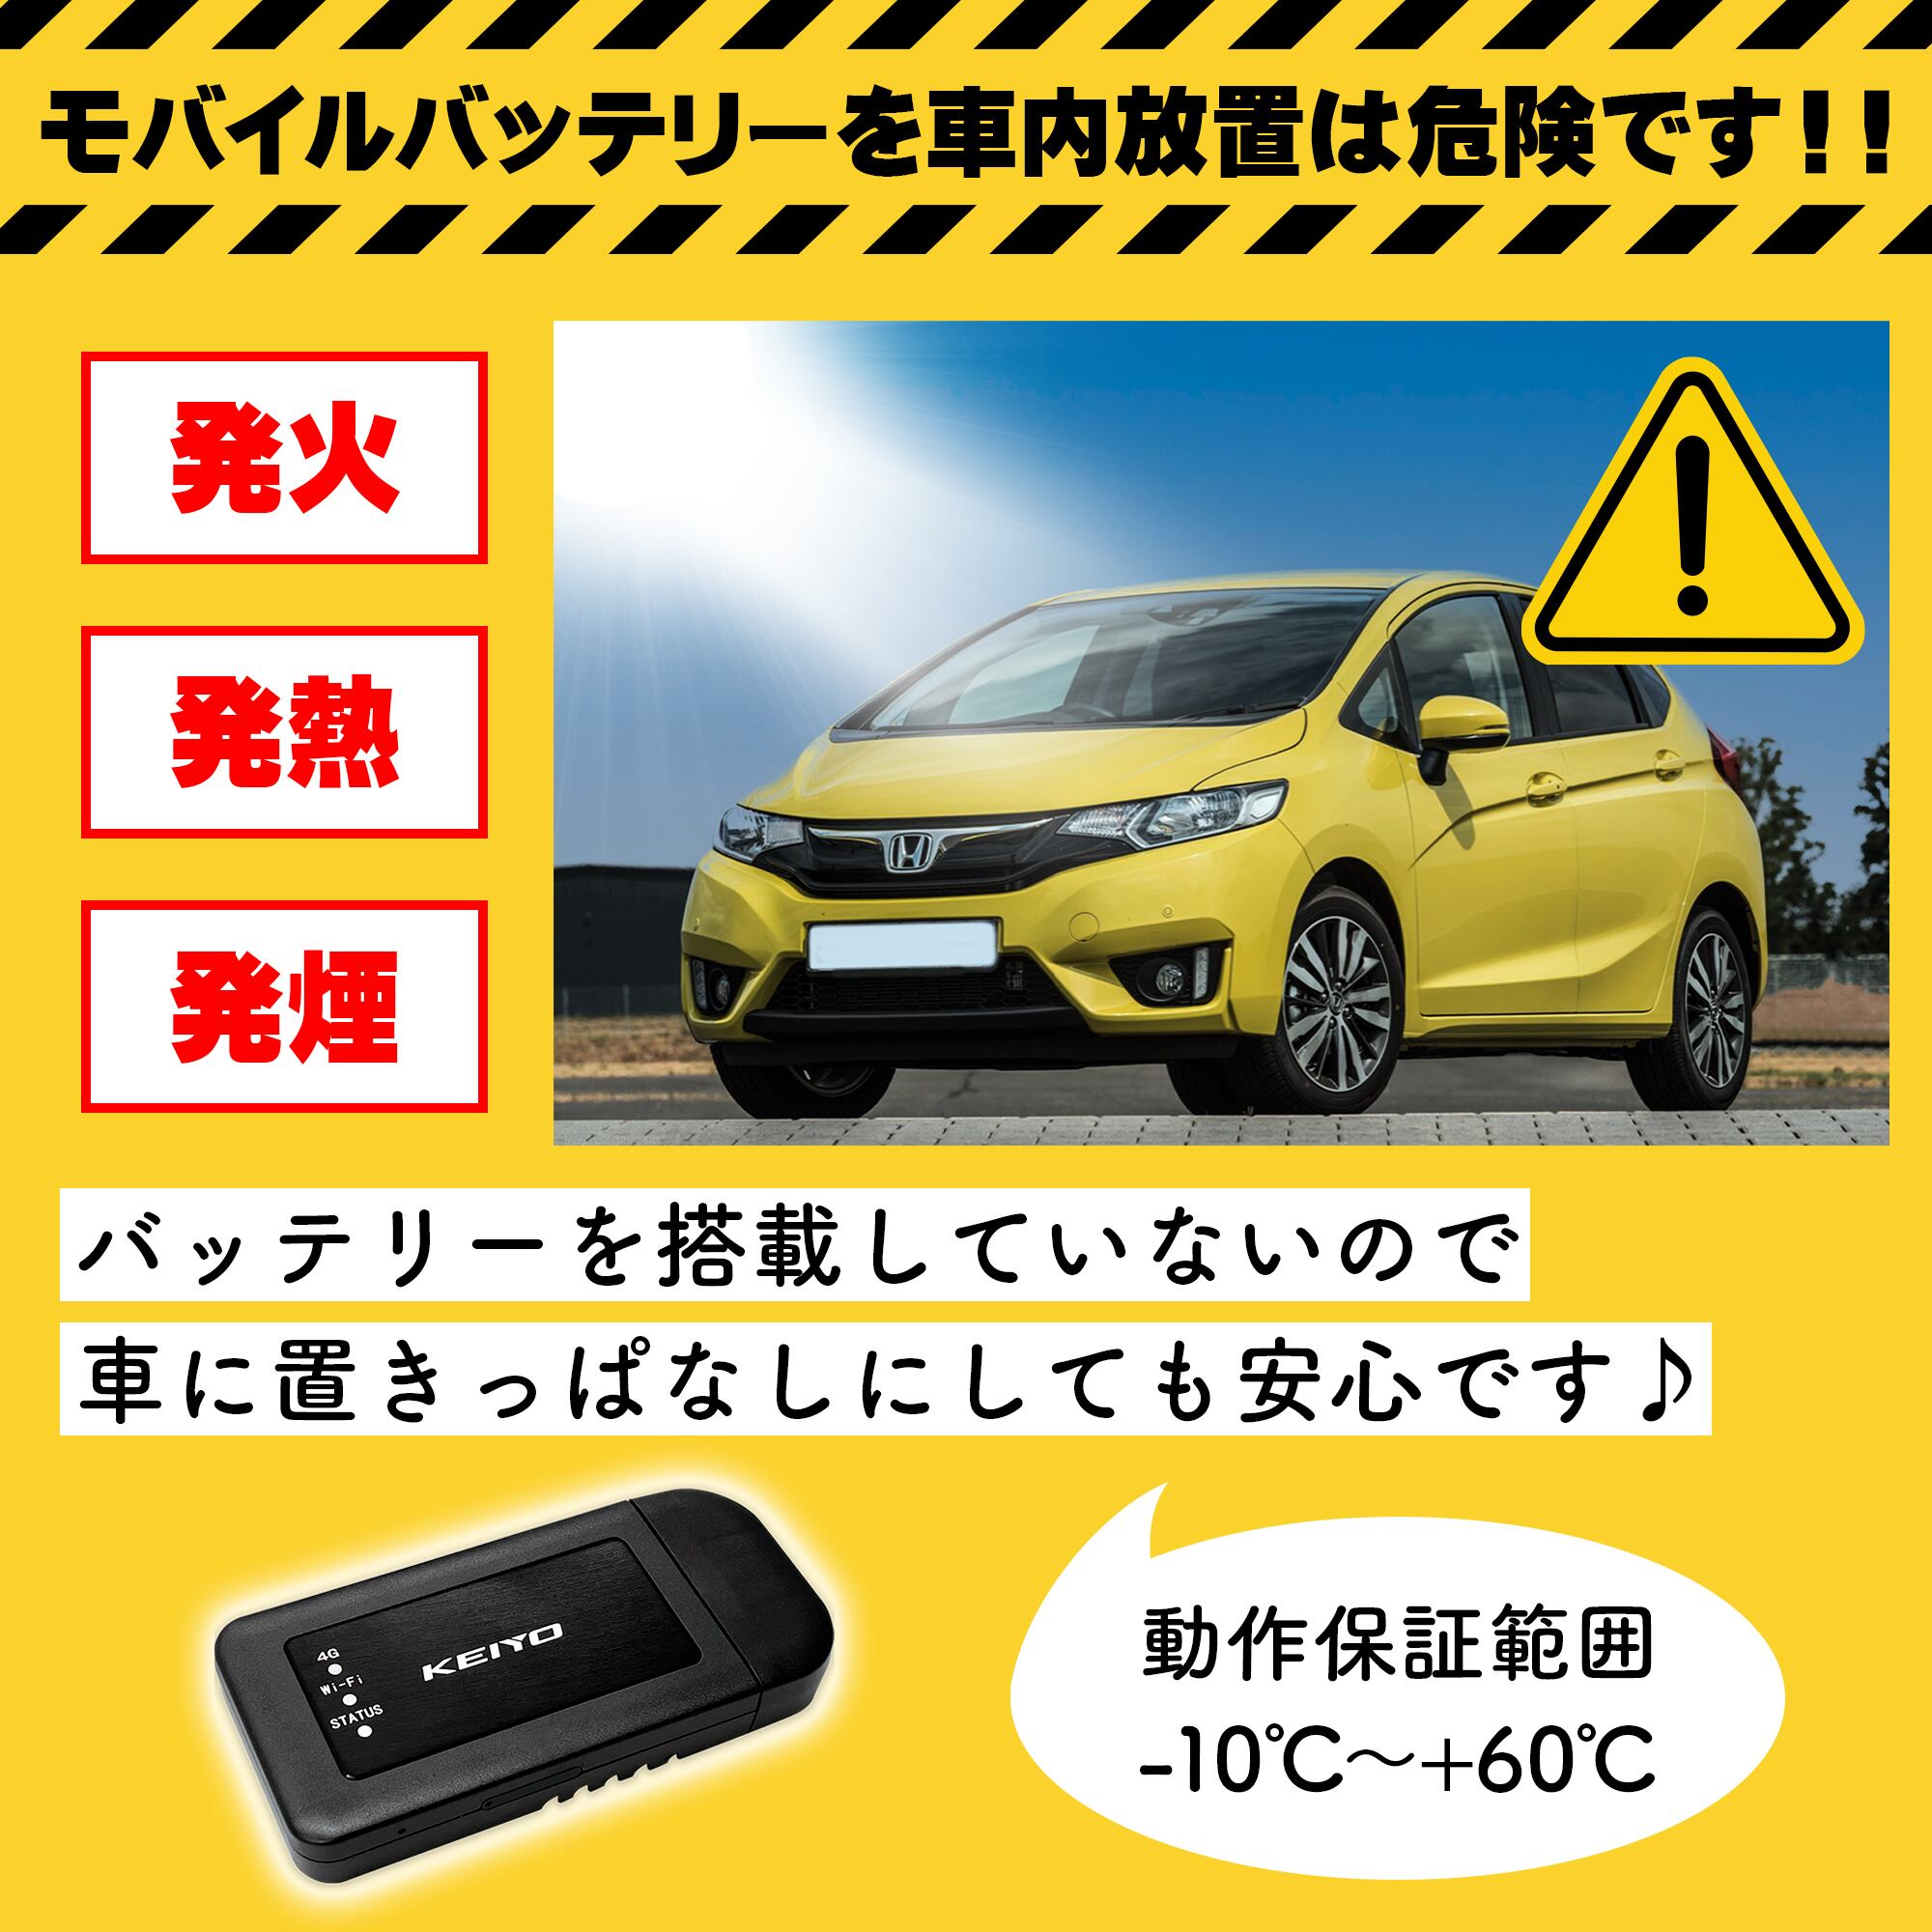 車載用Wi-Fiルーター AN-S092【車内を快適なWi-Fi環境に】 | KEIYO 